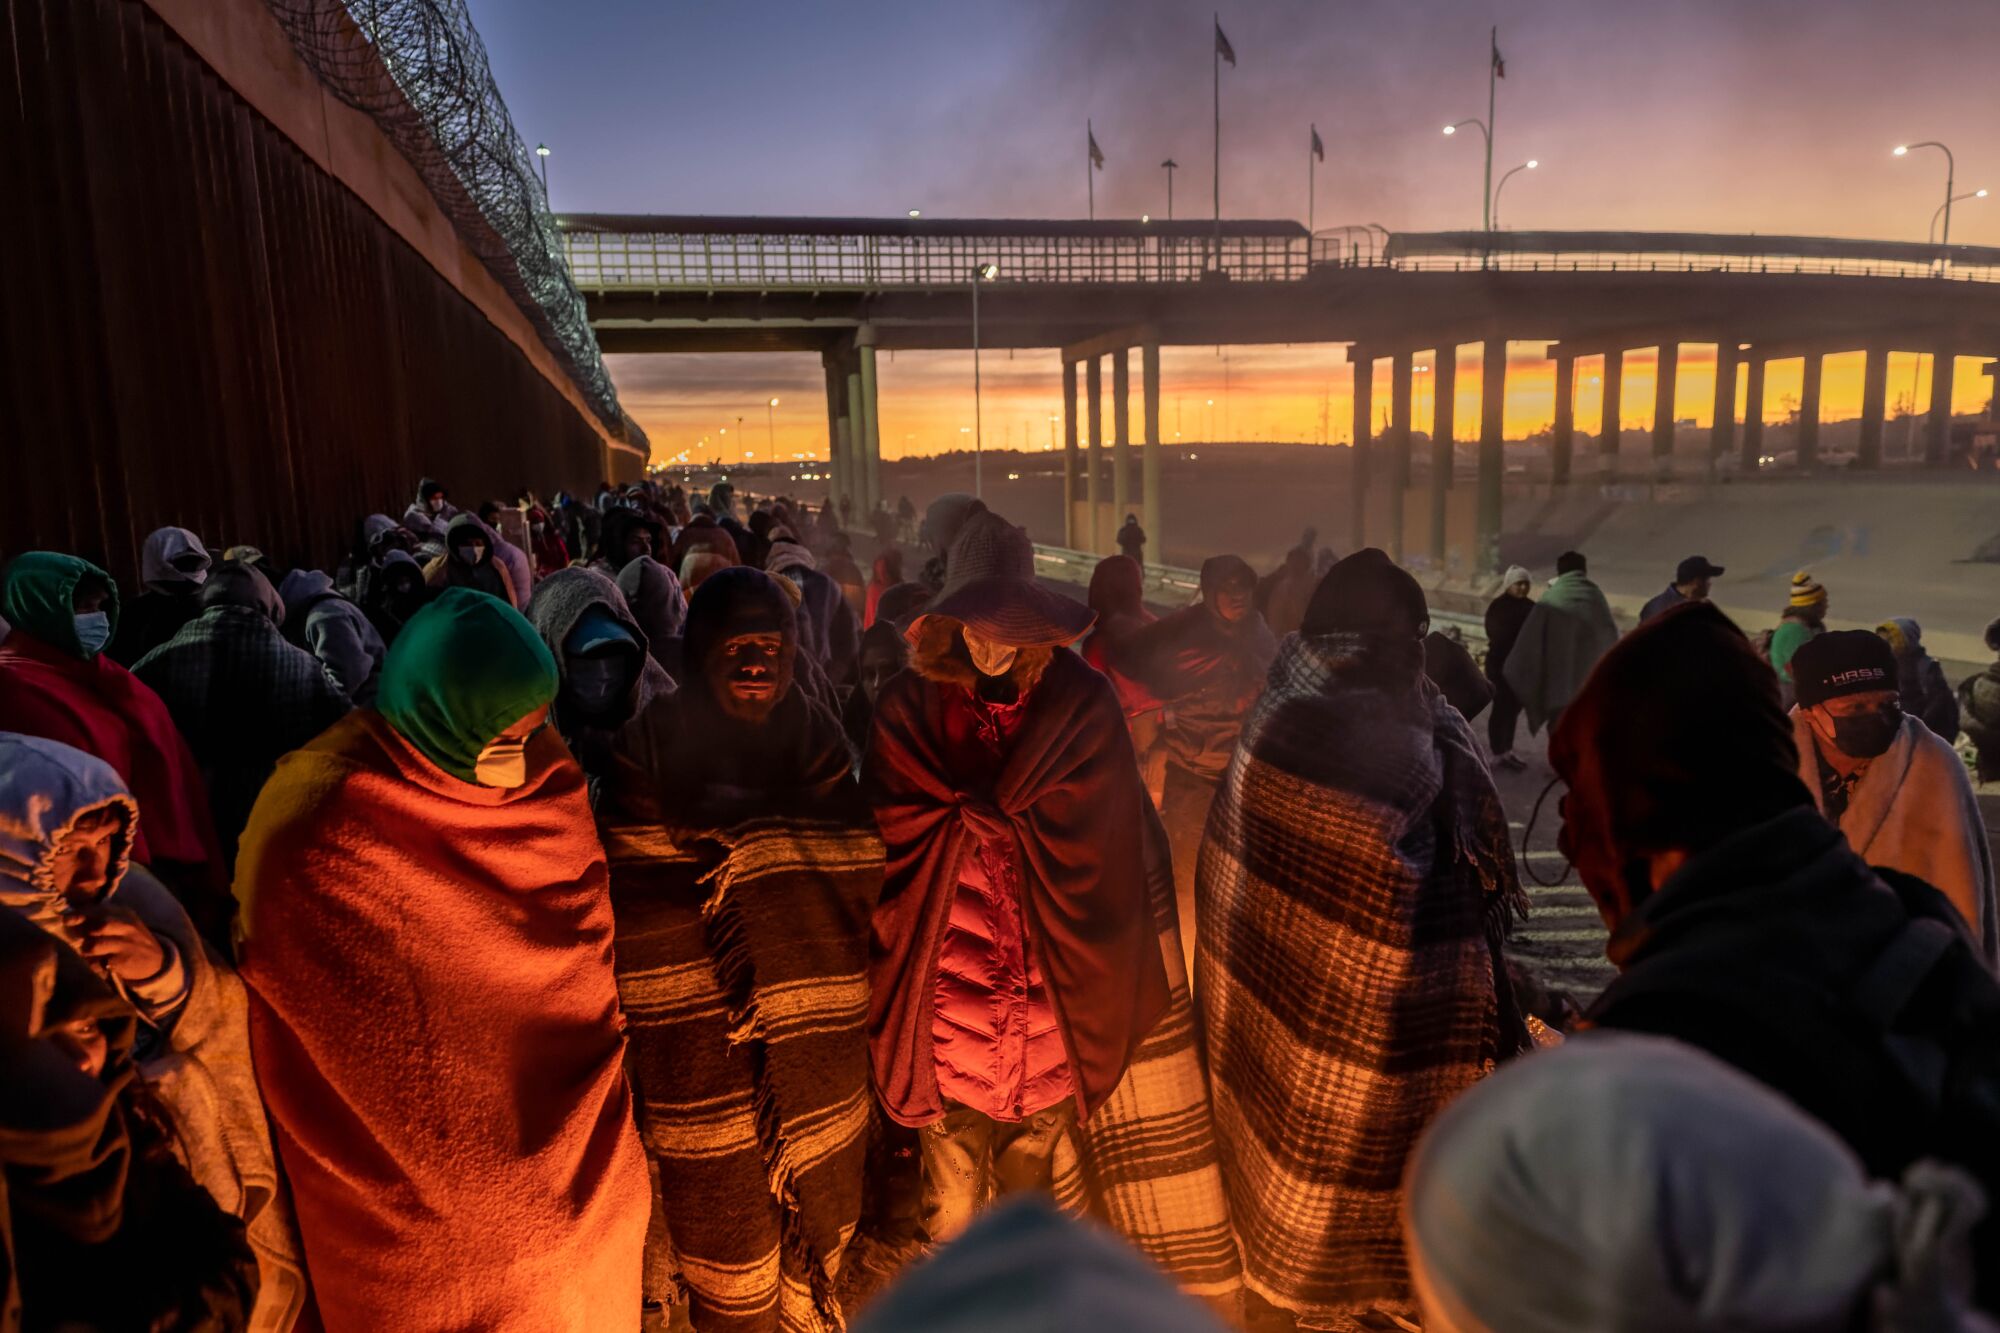   Battaniyelere sarılı göçmenler ateşin etrafında toplandı 